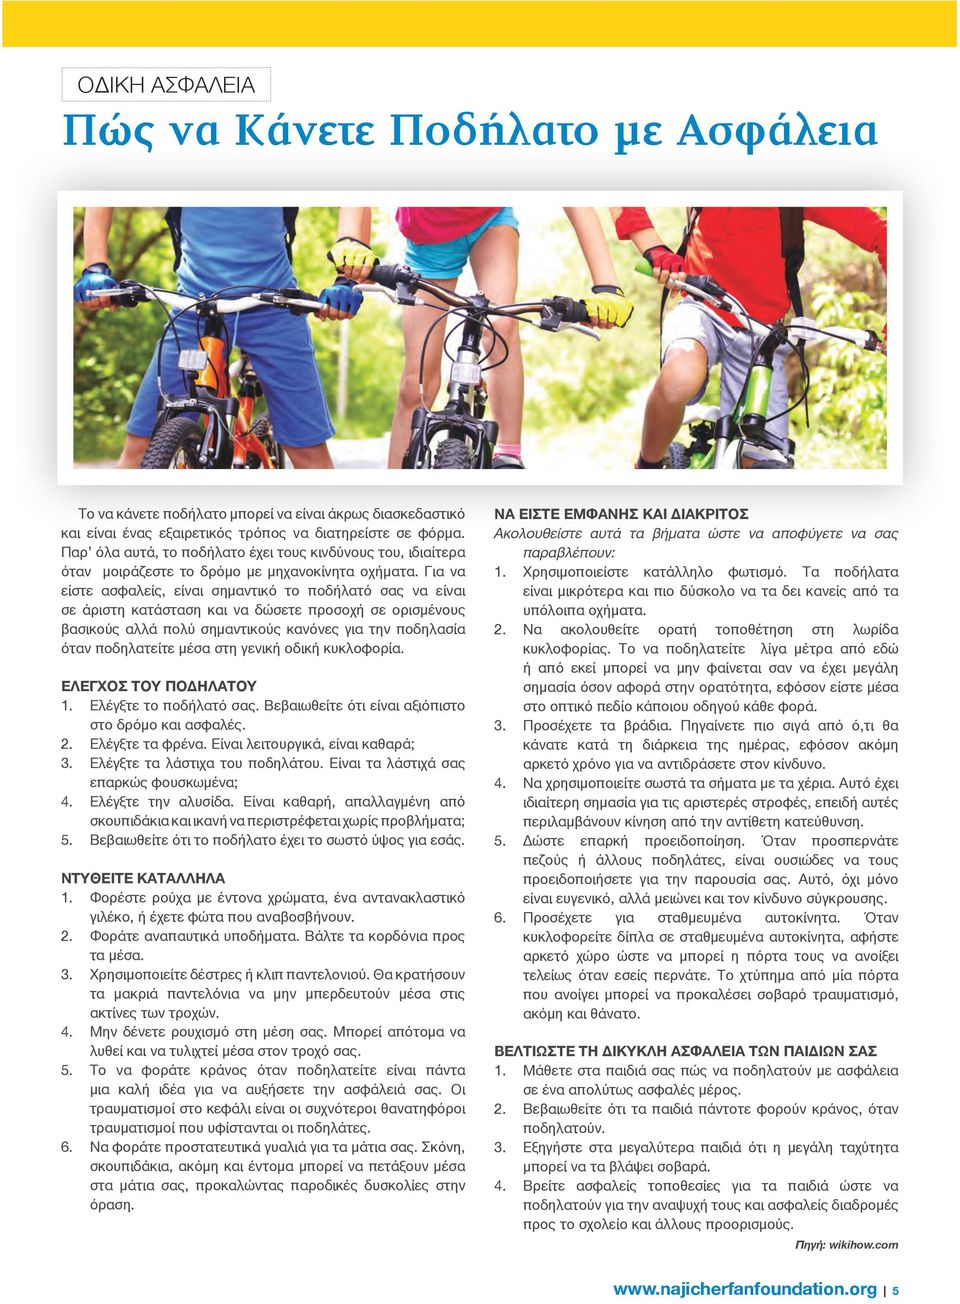 Για να είστε ασφαλείς, είναι σημαντικό το ποδήλατό σας να είναι σε άριστη κατάσταση και να δώσετε προσοχή σε ορισμένους βασικούς αλλά πολύ σημαντικούς κανόνες για την ποδηλασία όταν ποδηλατείτε μέσα